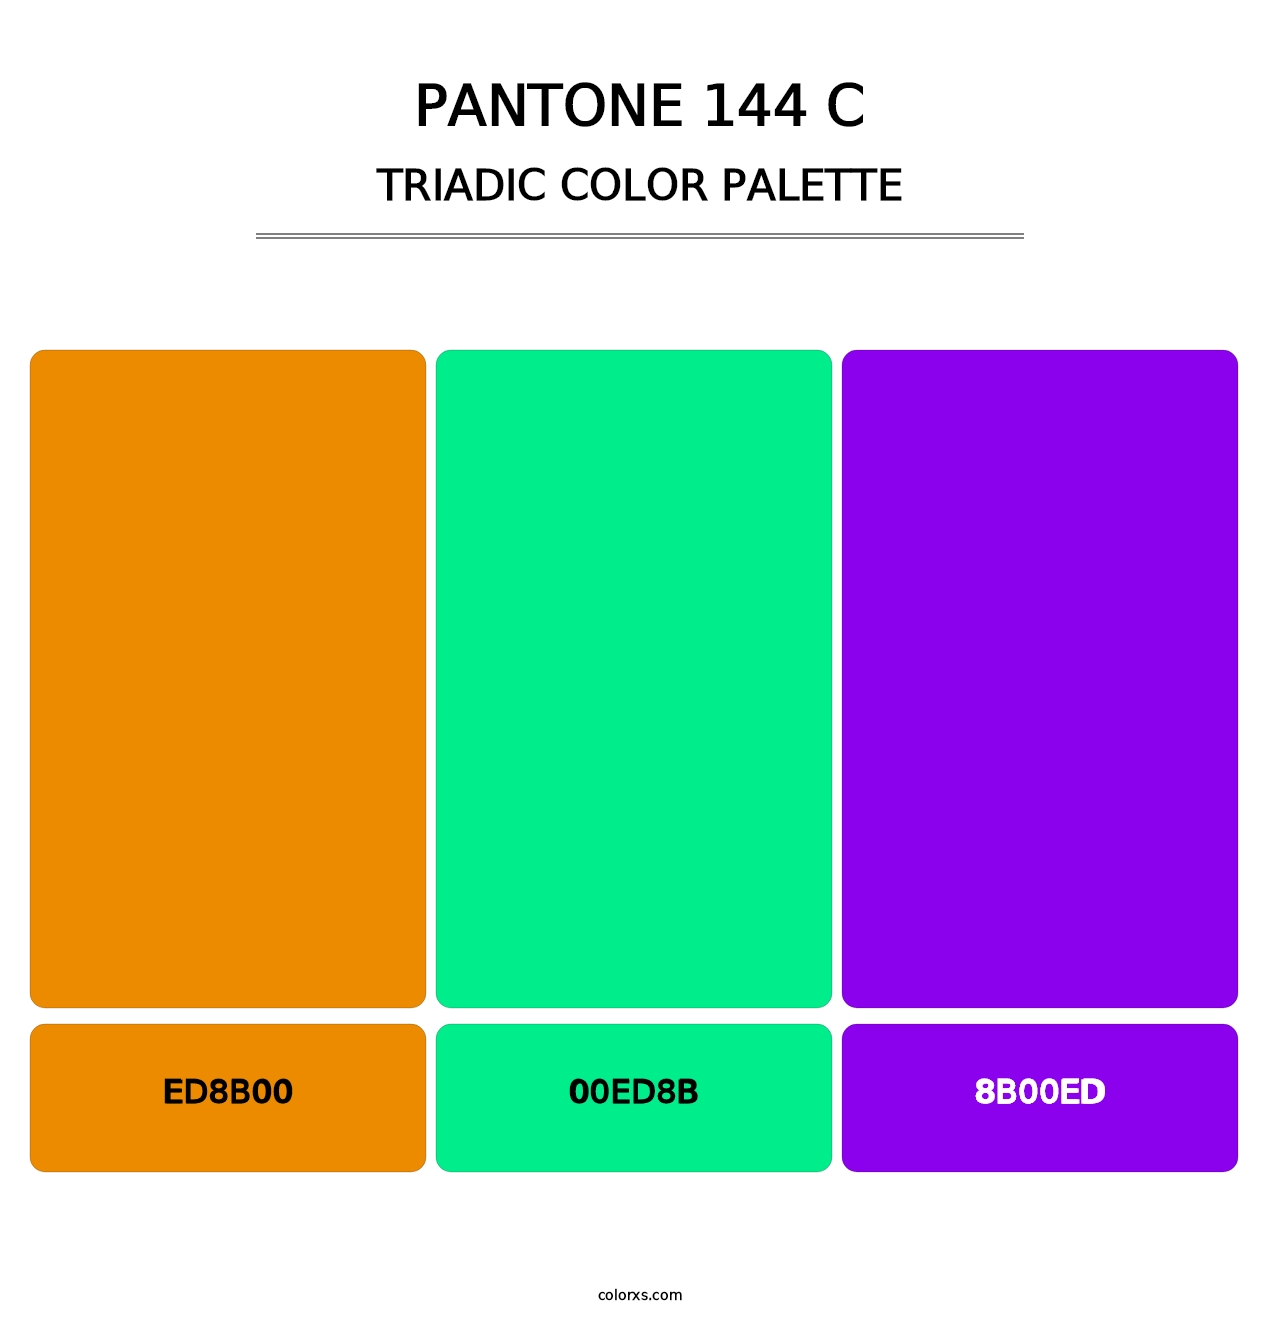 PANTONE 144 C - Triadic Color Palette